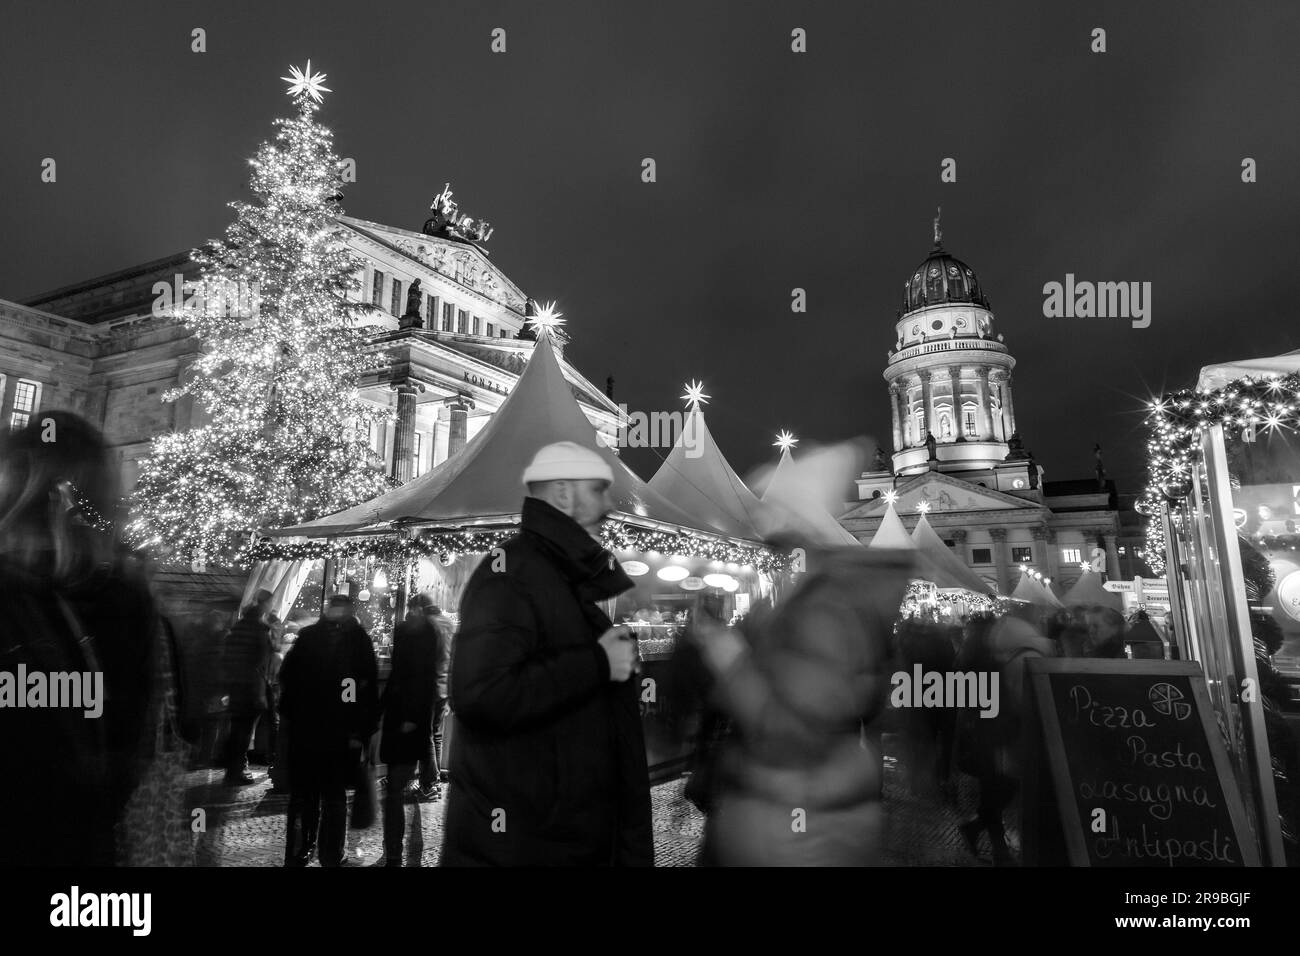 Berlin, Deutschland - 17. Dezember 2021: Der berühmte weihnachtsmarkt am Gendarmentmarkt in Berlin. Weichnachts Zauber bedeutet Weihnachtsnachtzauber. Stockfoto